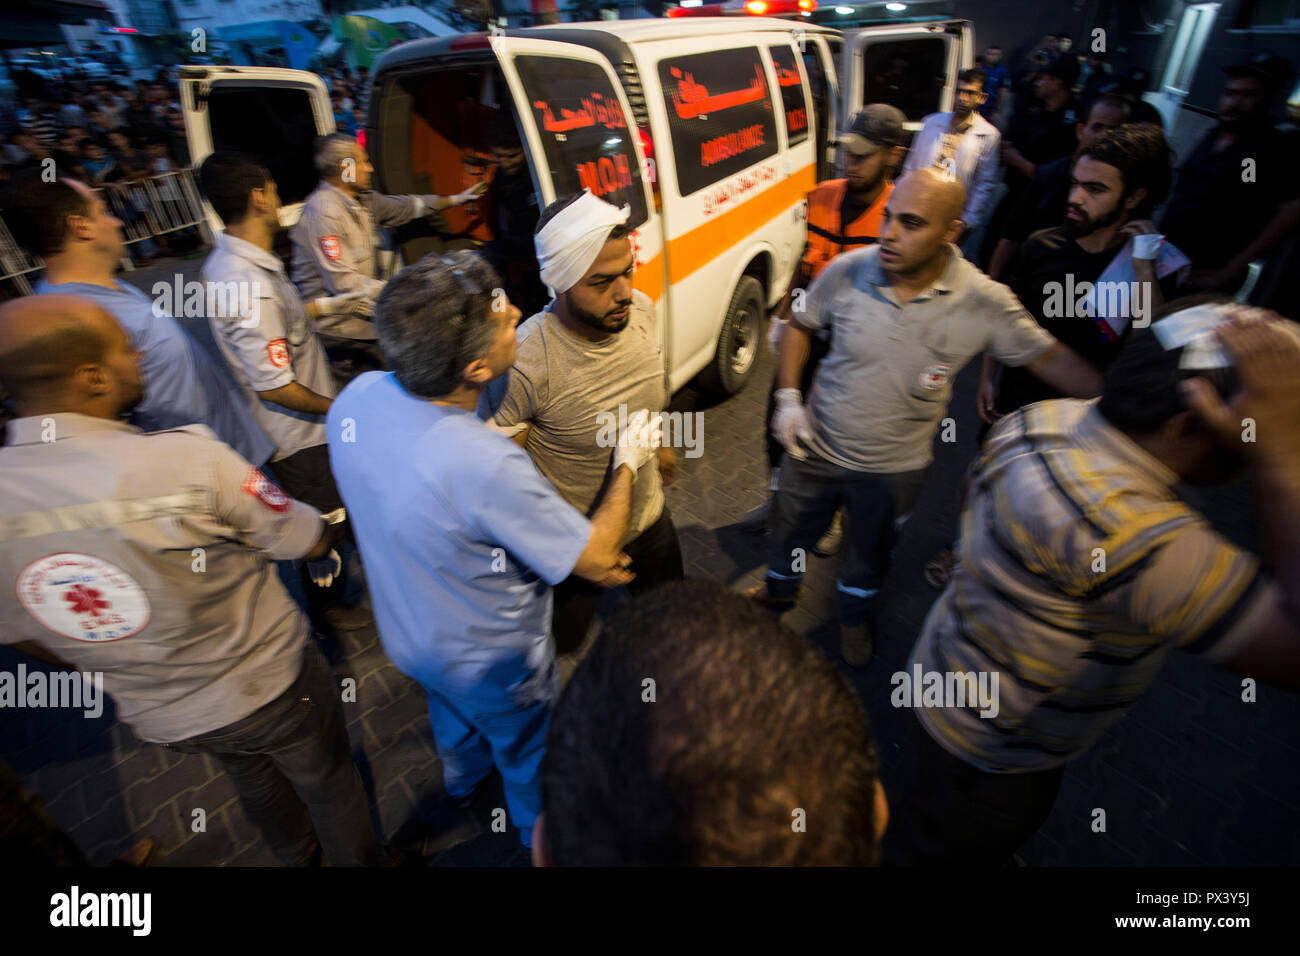 Un manifestante herido es considerado de ser llevados al hospital de Shifa, a recibir tratamiento durante los enfrentamientos. Los enfrentamientos en la frontera de Israel en un anti-ocupación de marzo cerca de la frontera oriental de la Faja de Gaza. Foto de stock